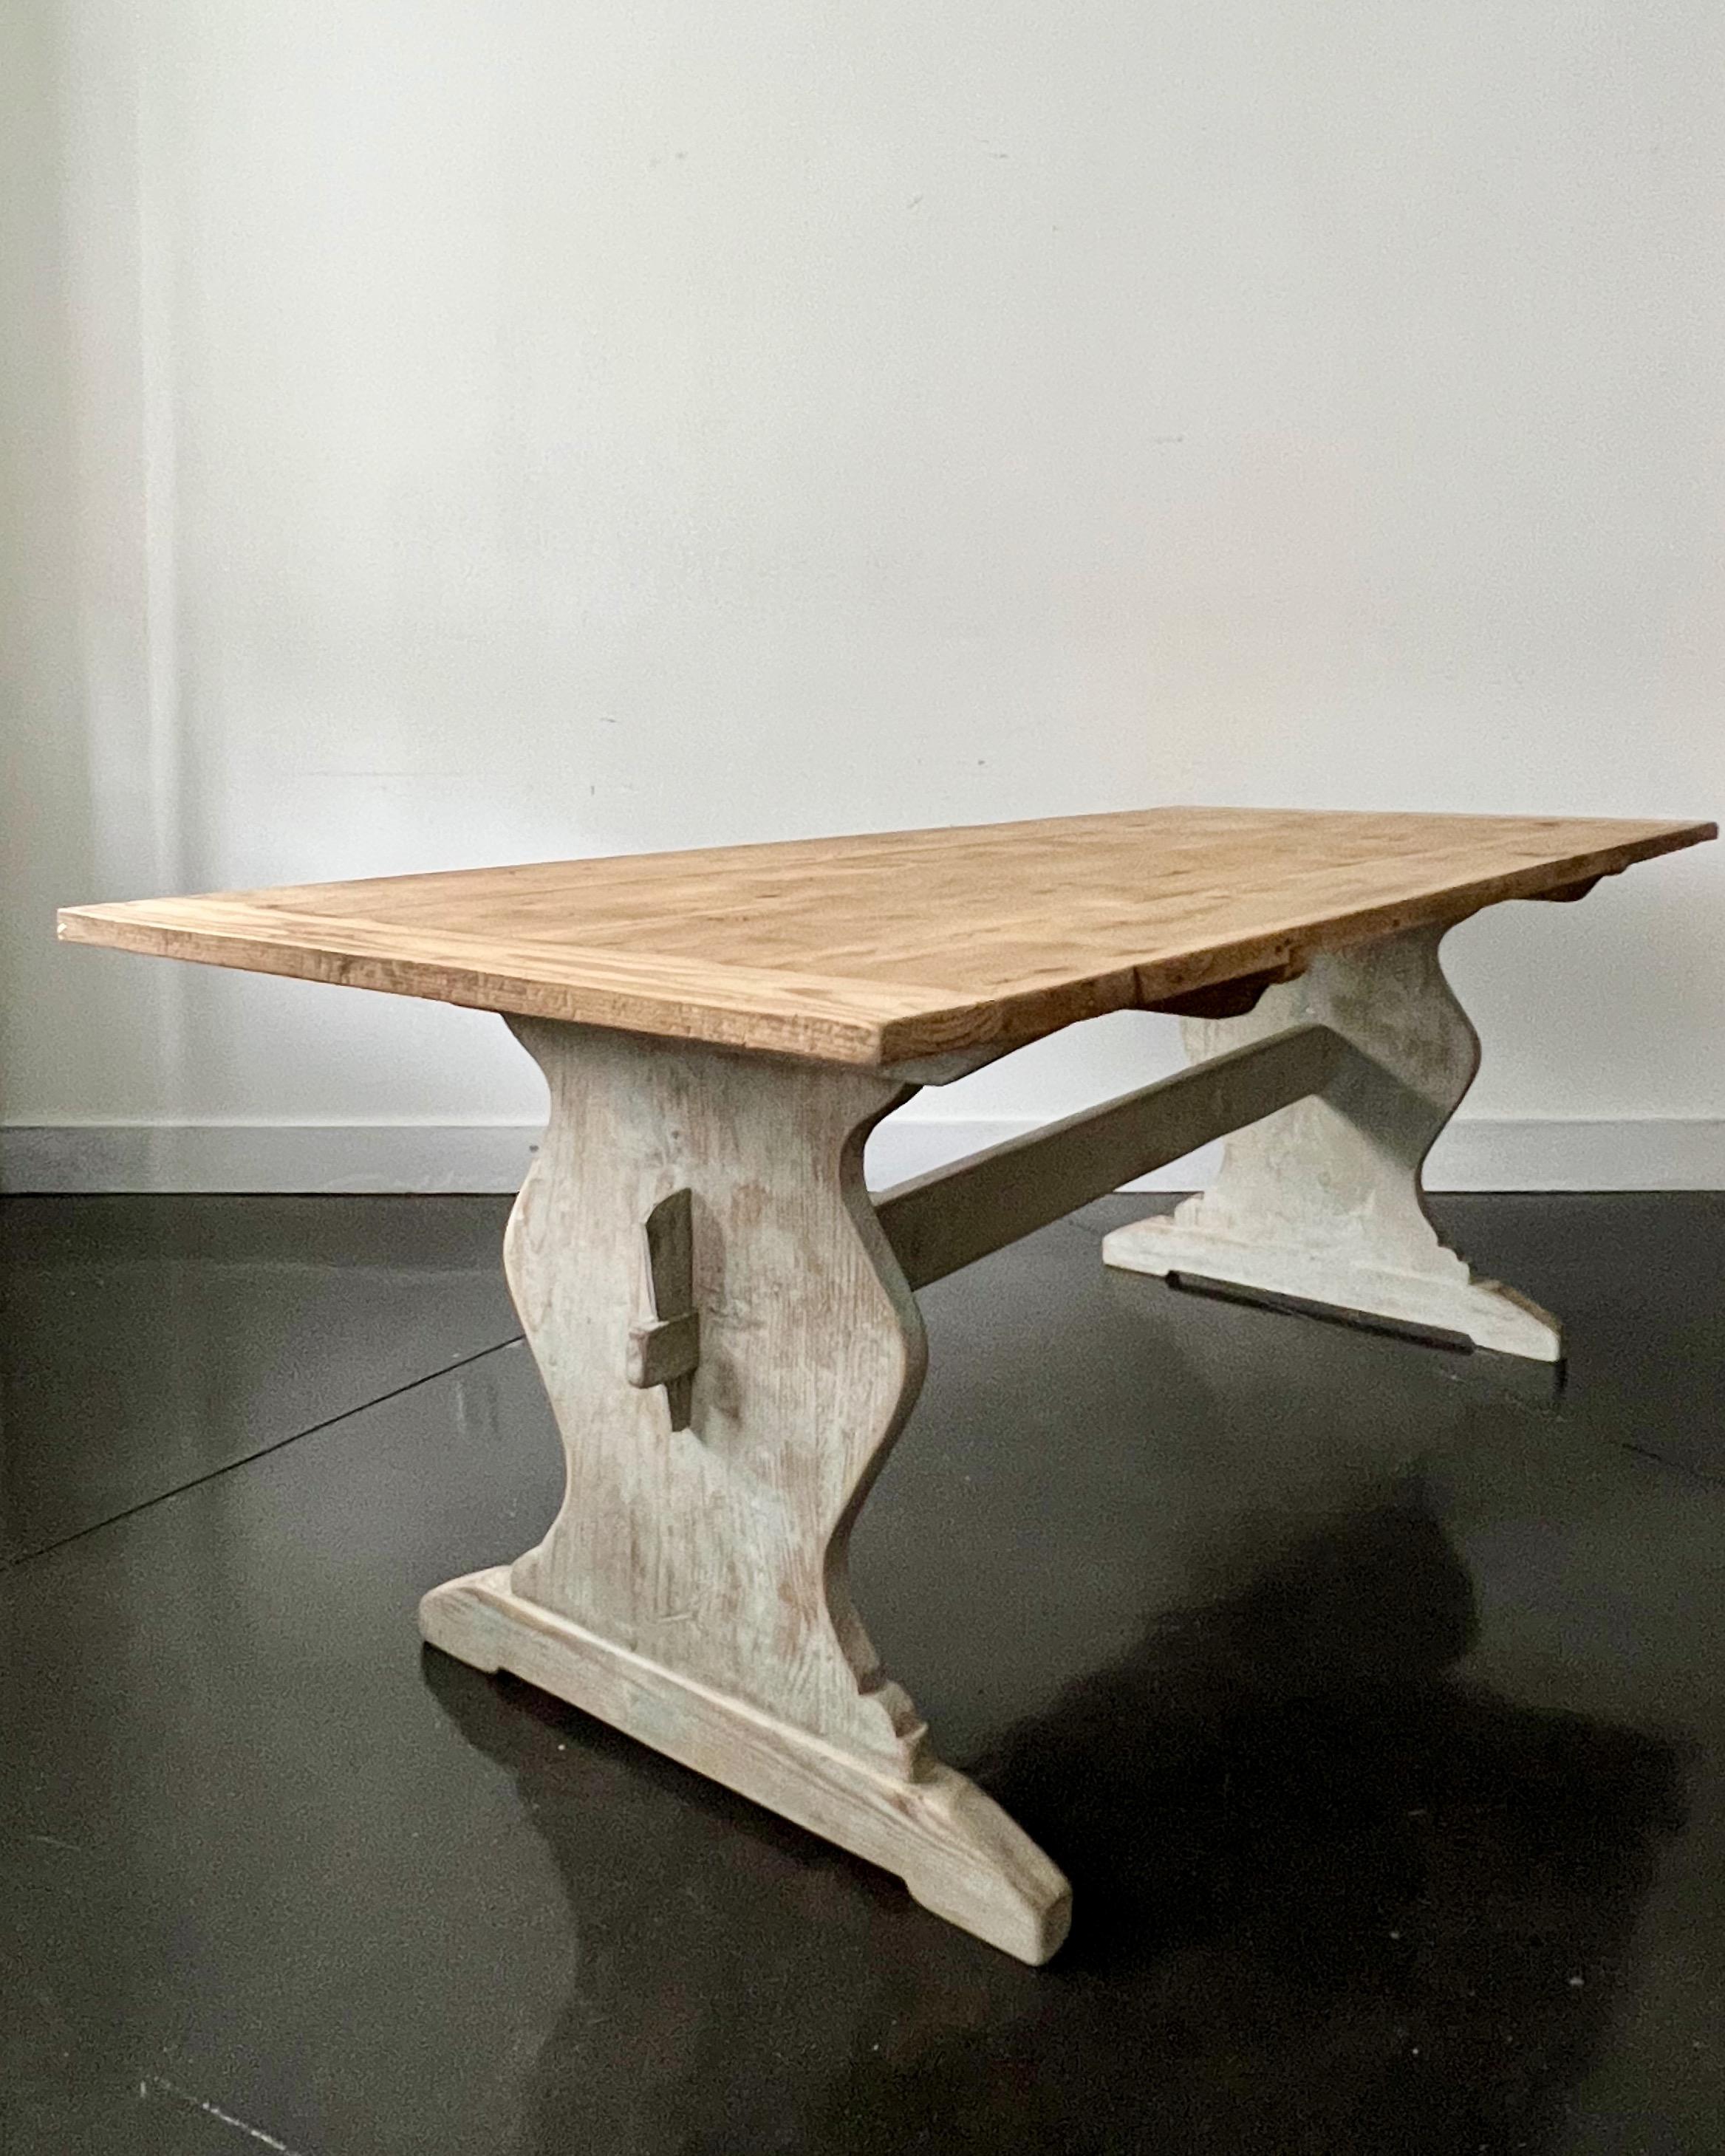 19th century Swedish trestle table in style in “Allmogestil,